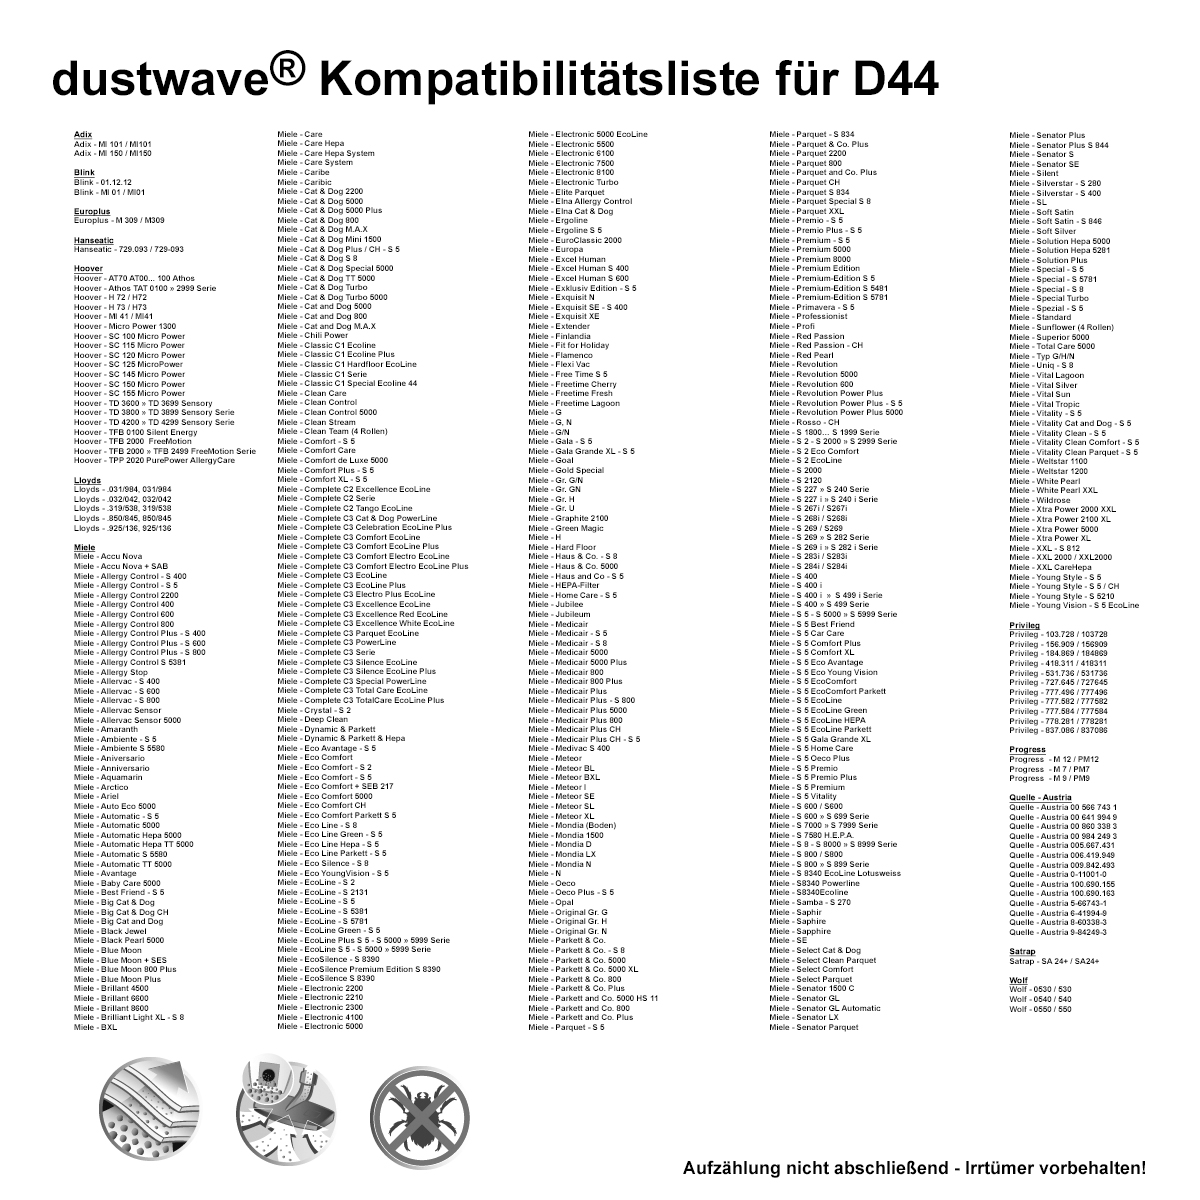 10 Staubsaugerbeutel | Staubbeutel passend für Miele S8 Duoflex Bodenstaubsauger / dustwave® Markenstaubbeutel / Made in Germany + inkl. Microfilter